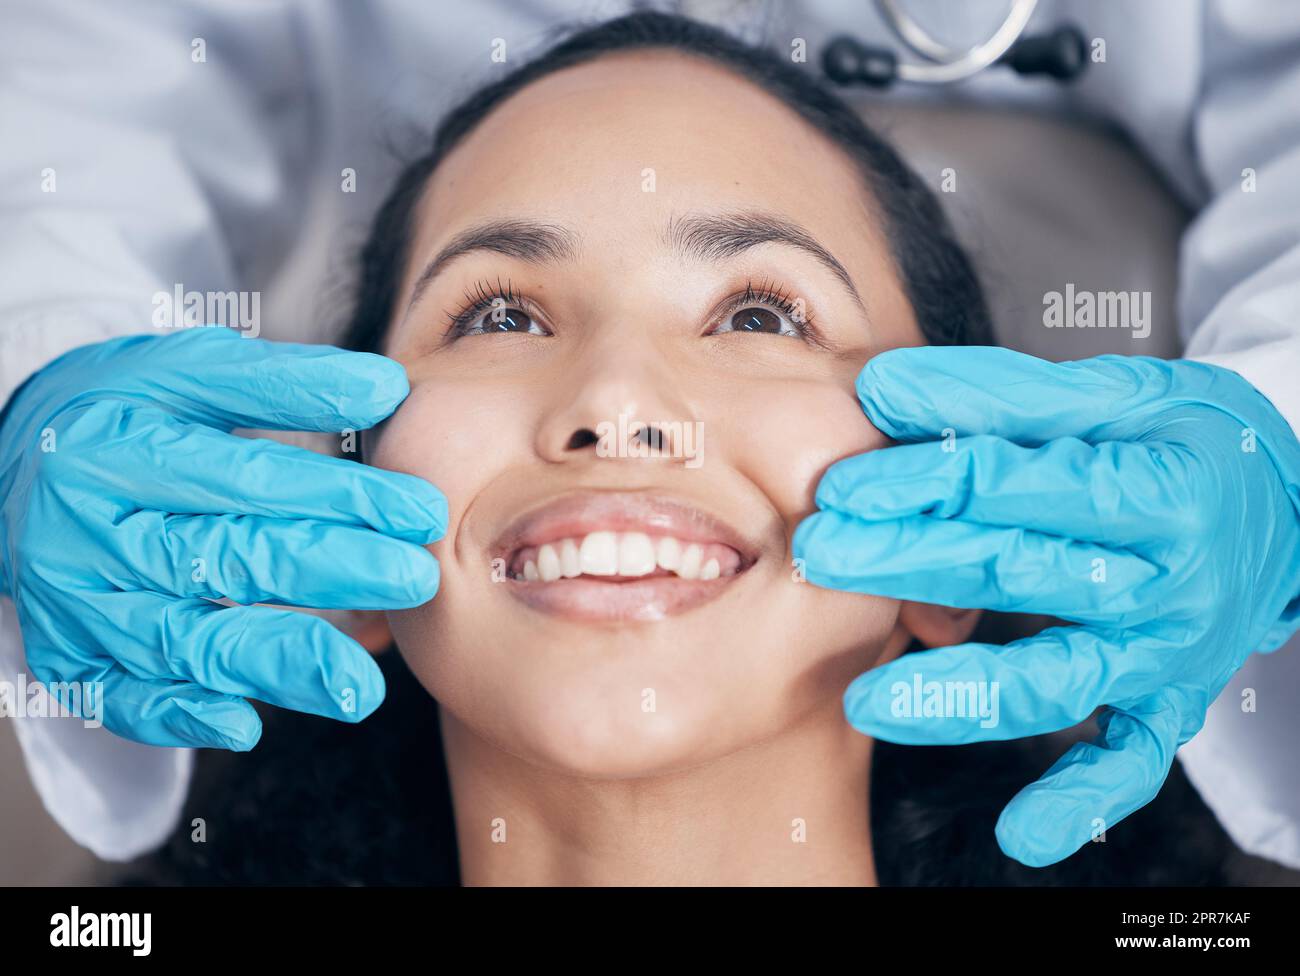 Ein Lächeln, das funkelt. Ein Zahnarzt, der nach einem Eingriff seine Handarbeit überprüft. Stockfoto